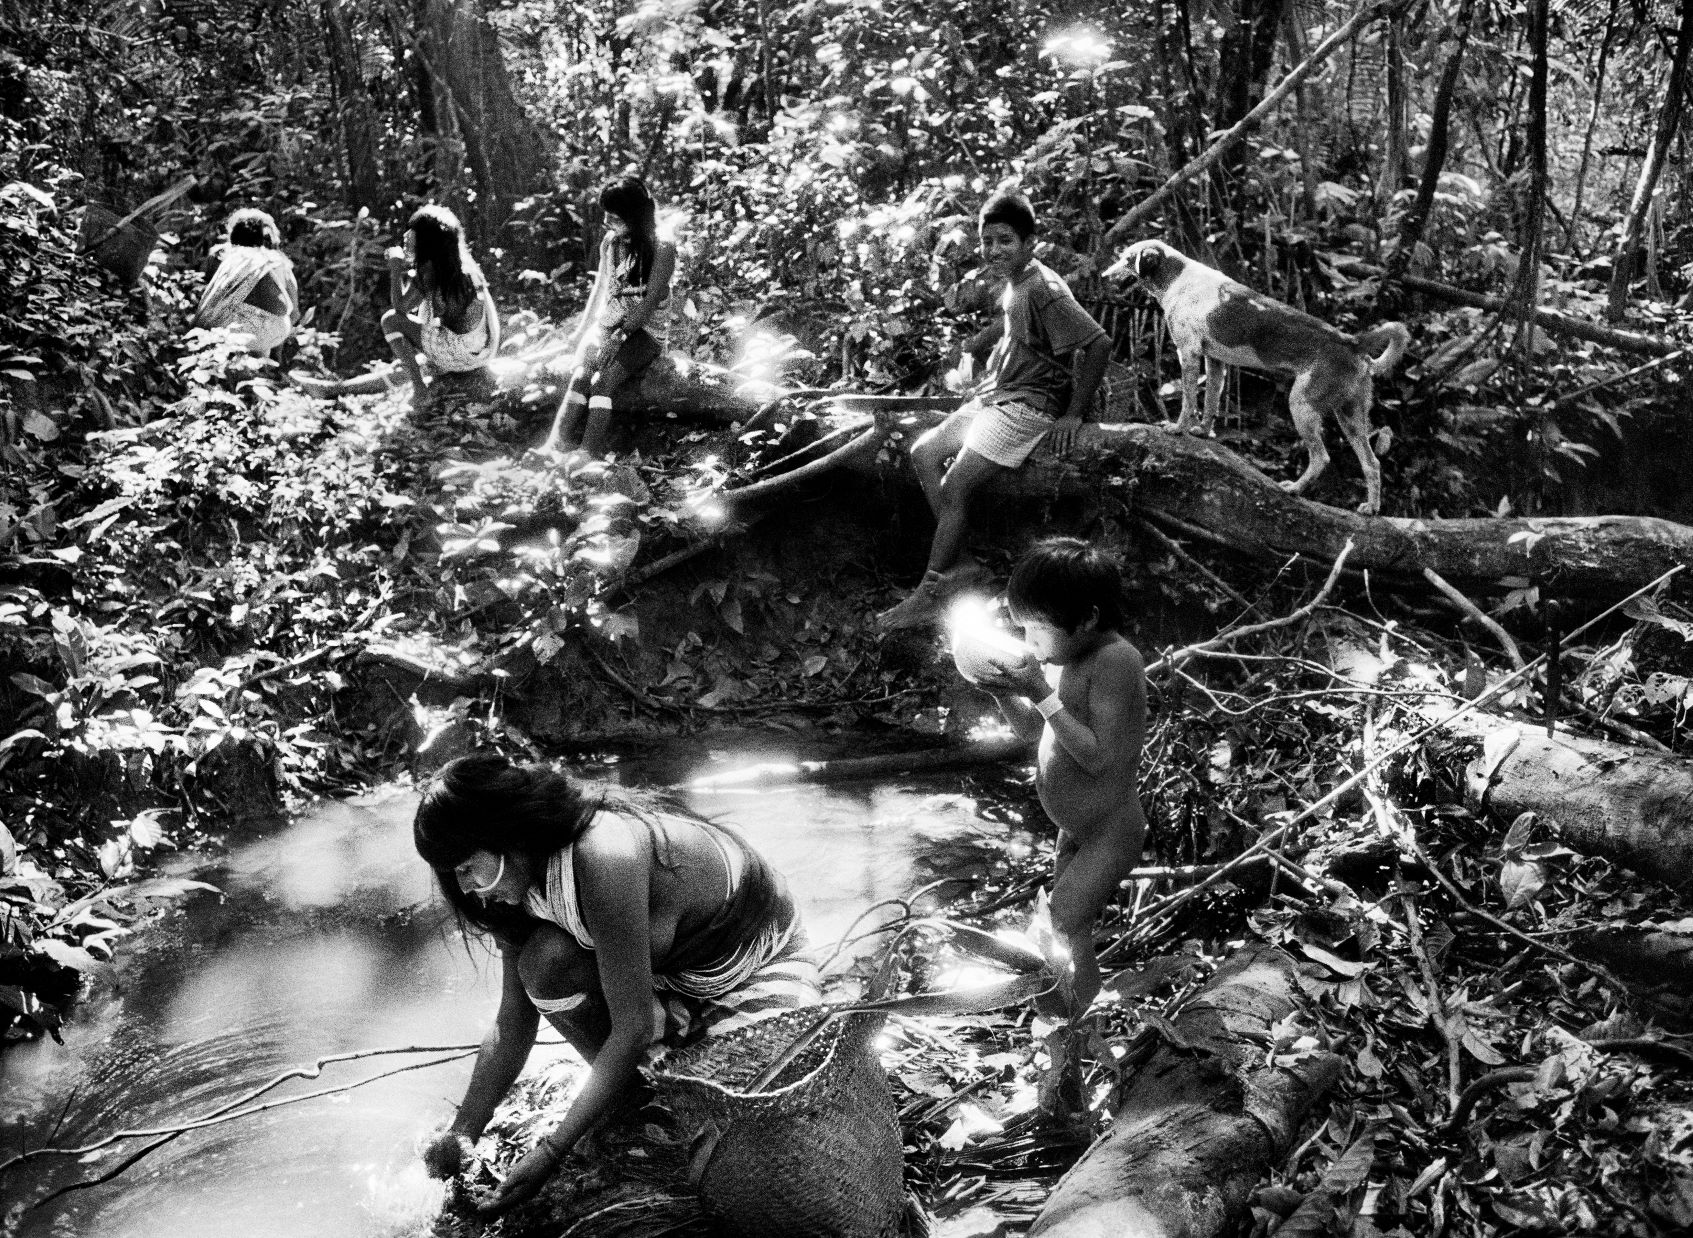 Indígenas Morubo, no Vale do Javari, onde foram assassinados Dom Phillips e Bruno Pereira: "Milícias: foram transferidas para a Amazônia por este governo", afirma Salgado (Foto: Sebastião Salgado - 1979)